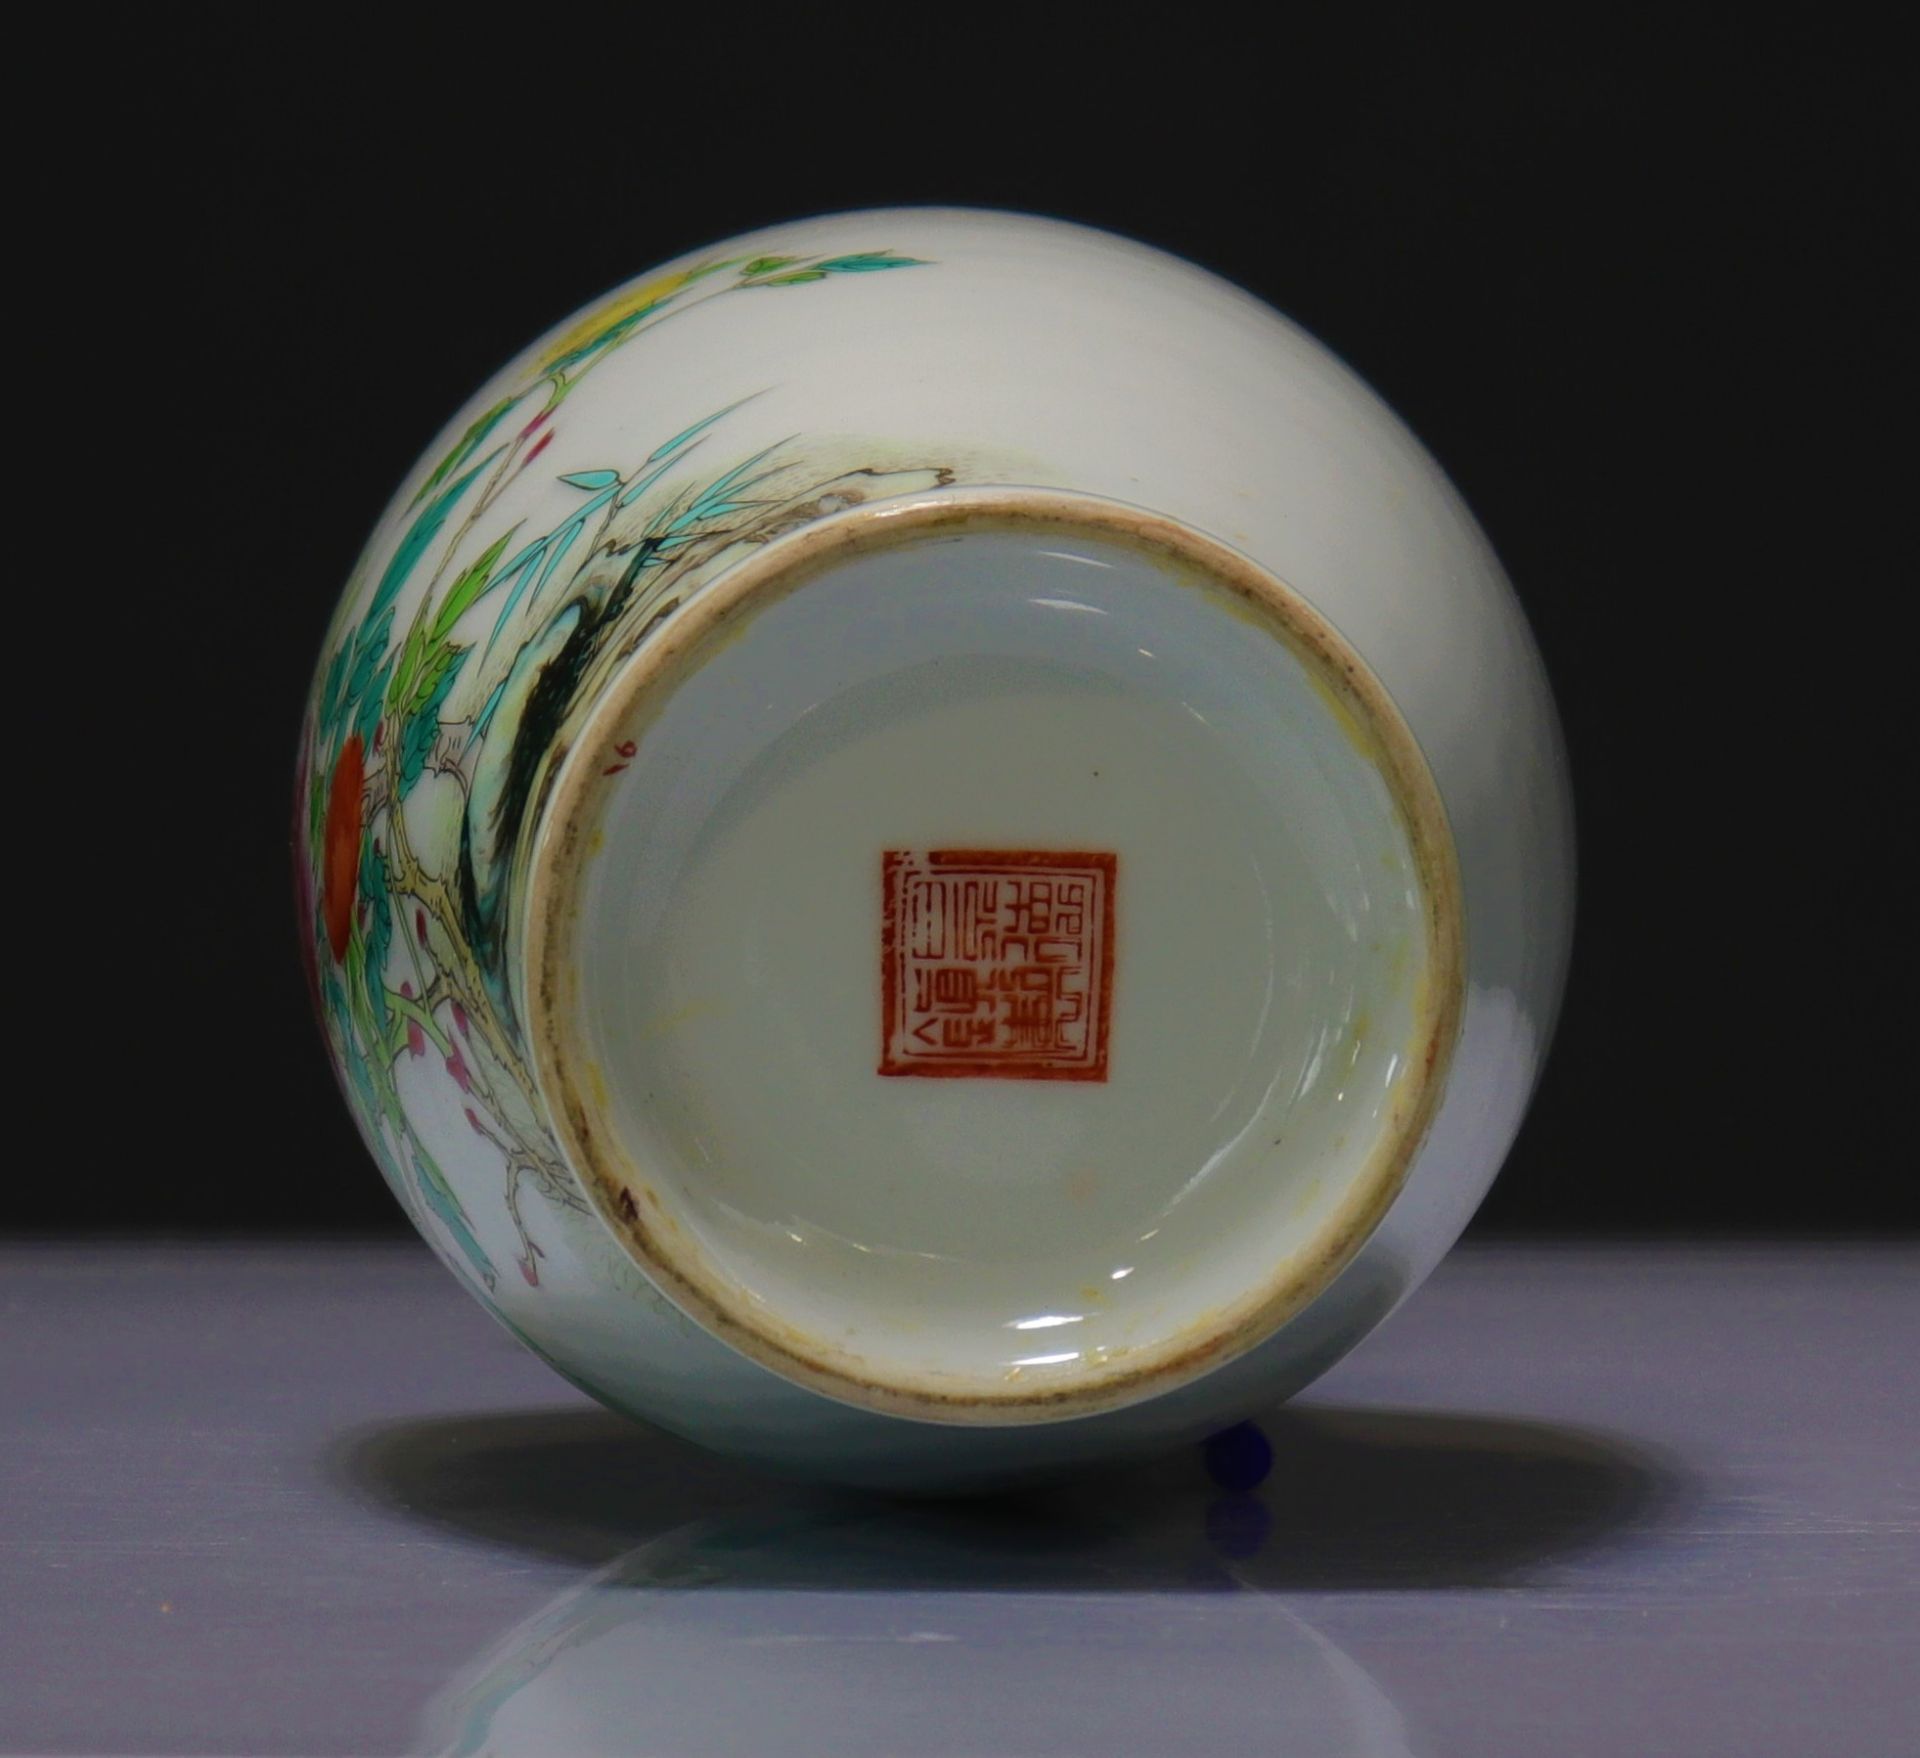 Chinese republic porcelain vase - Image 3 of 3